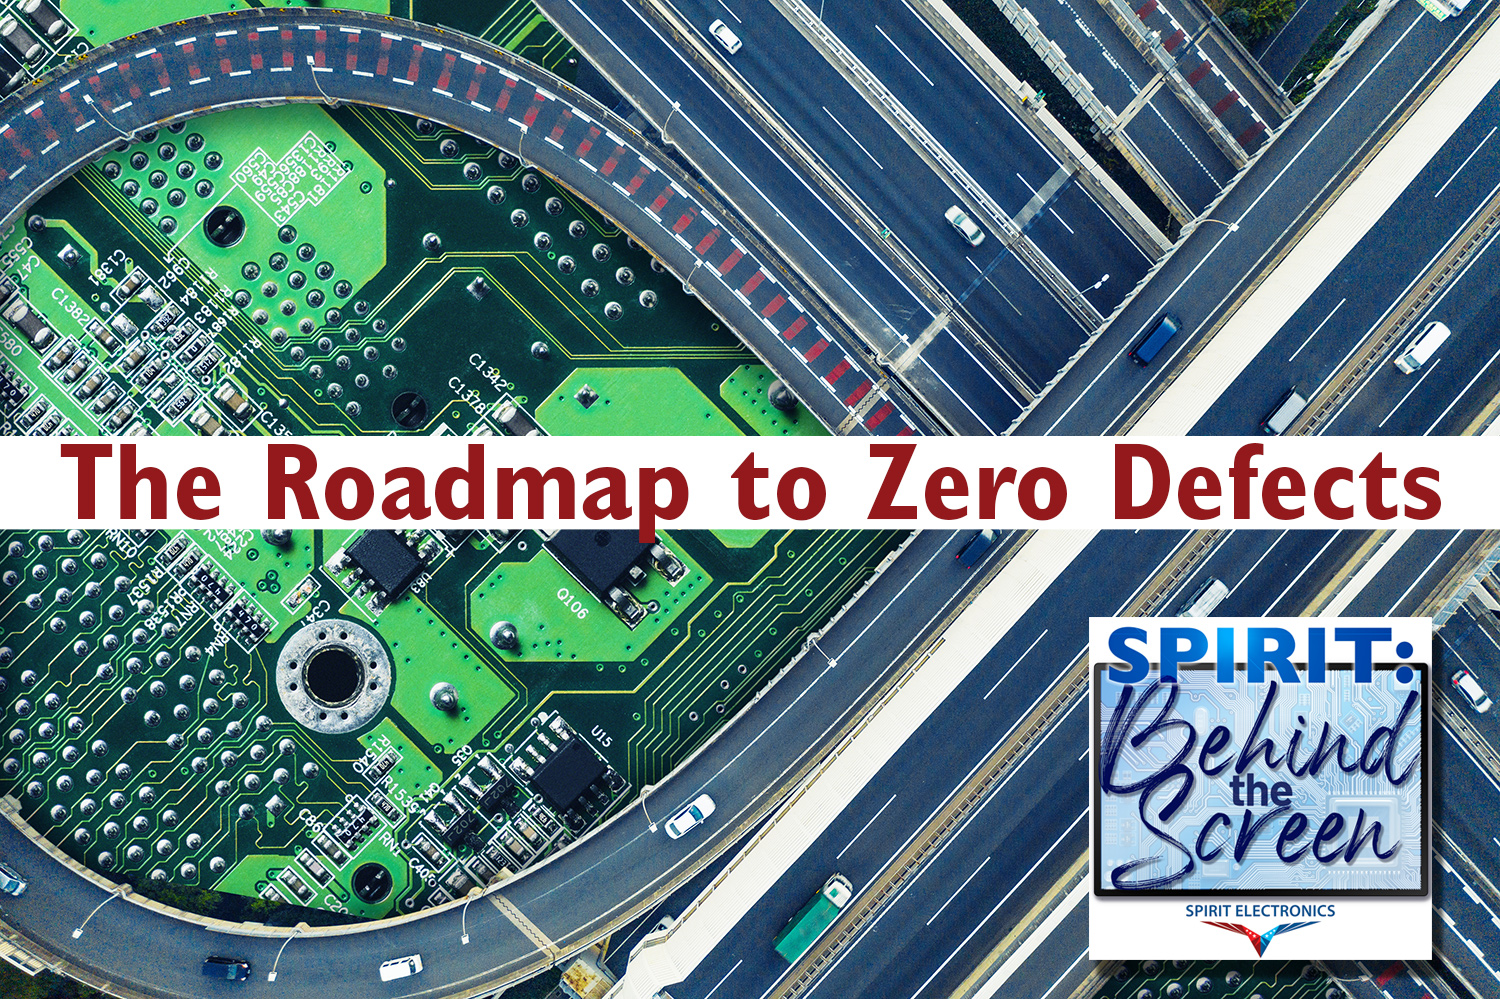 Roadmap to Zero Defects